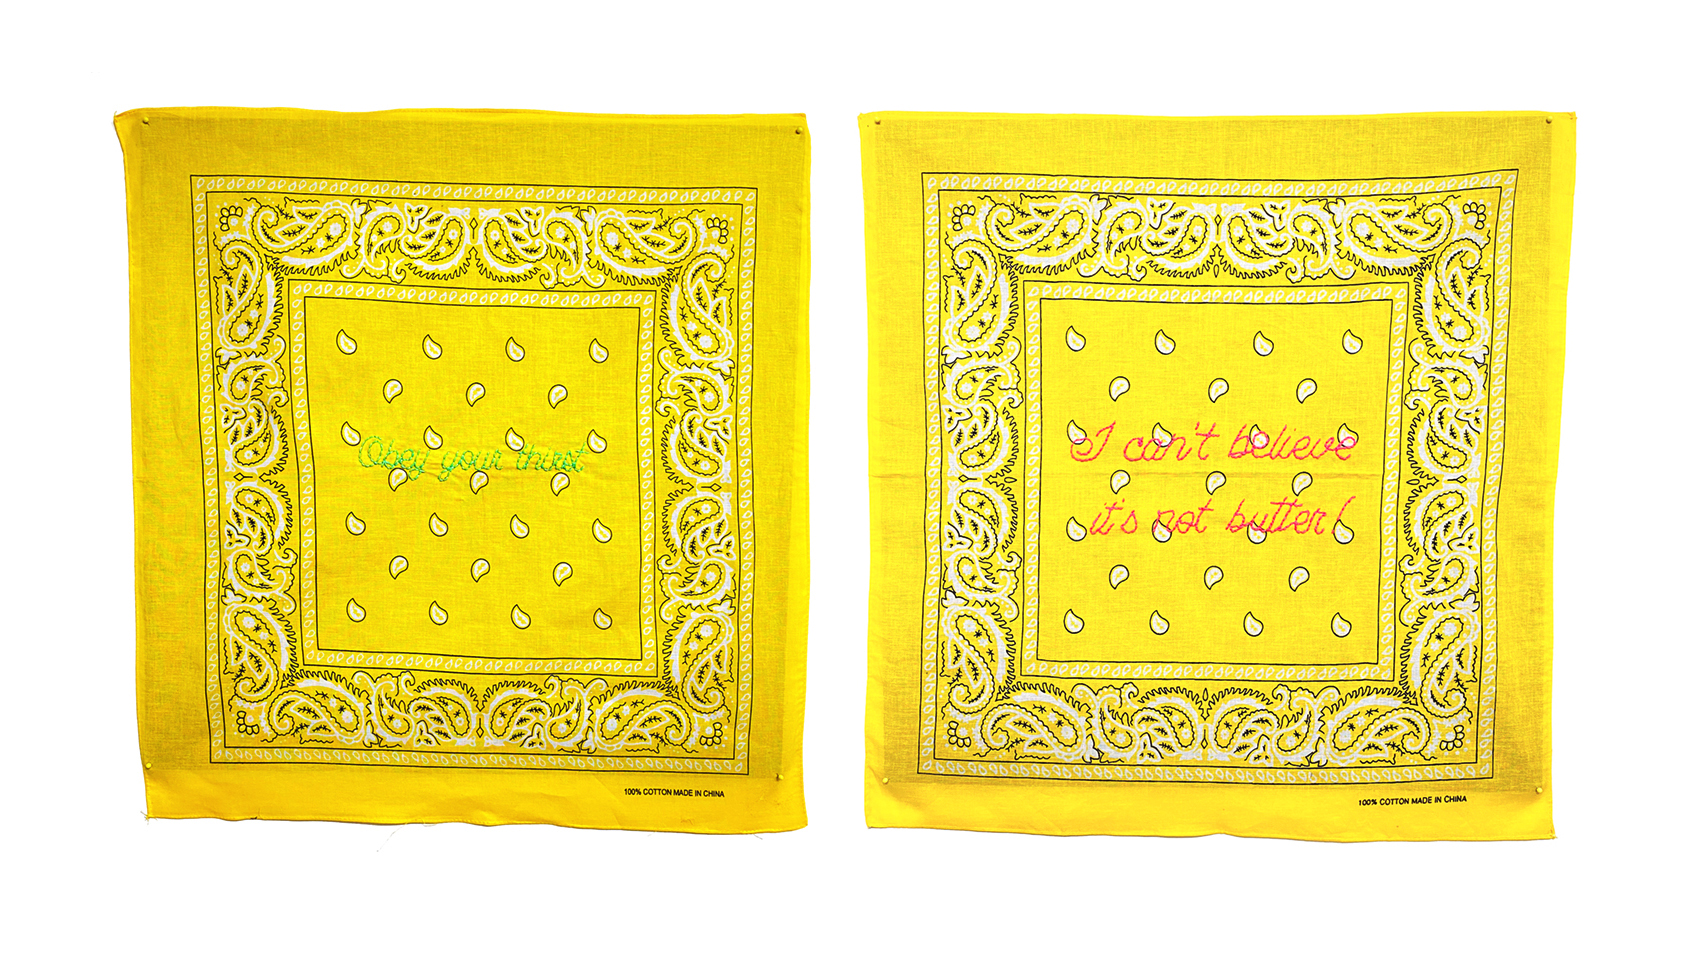 Hand embrodery on yellow bandana